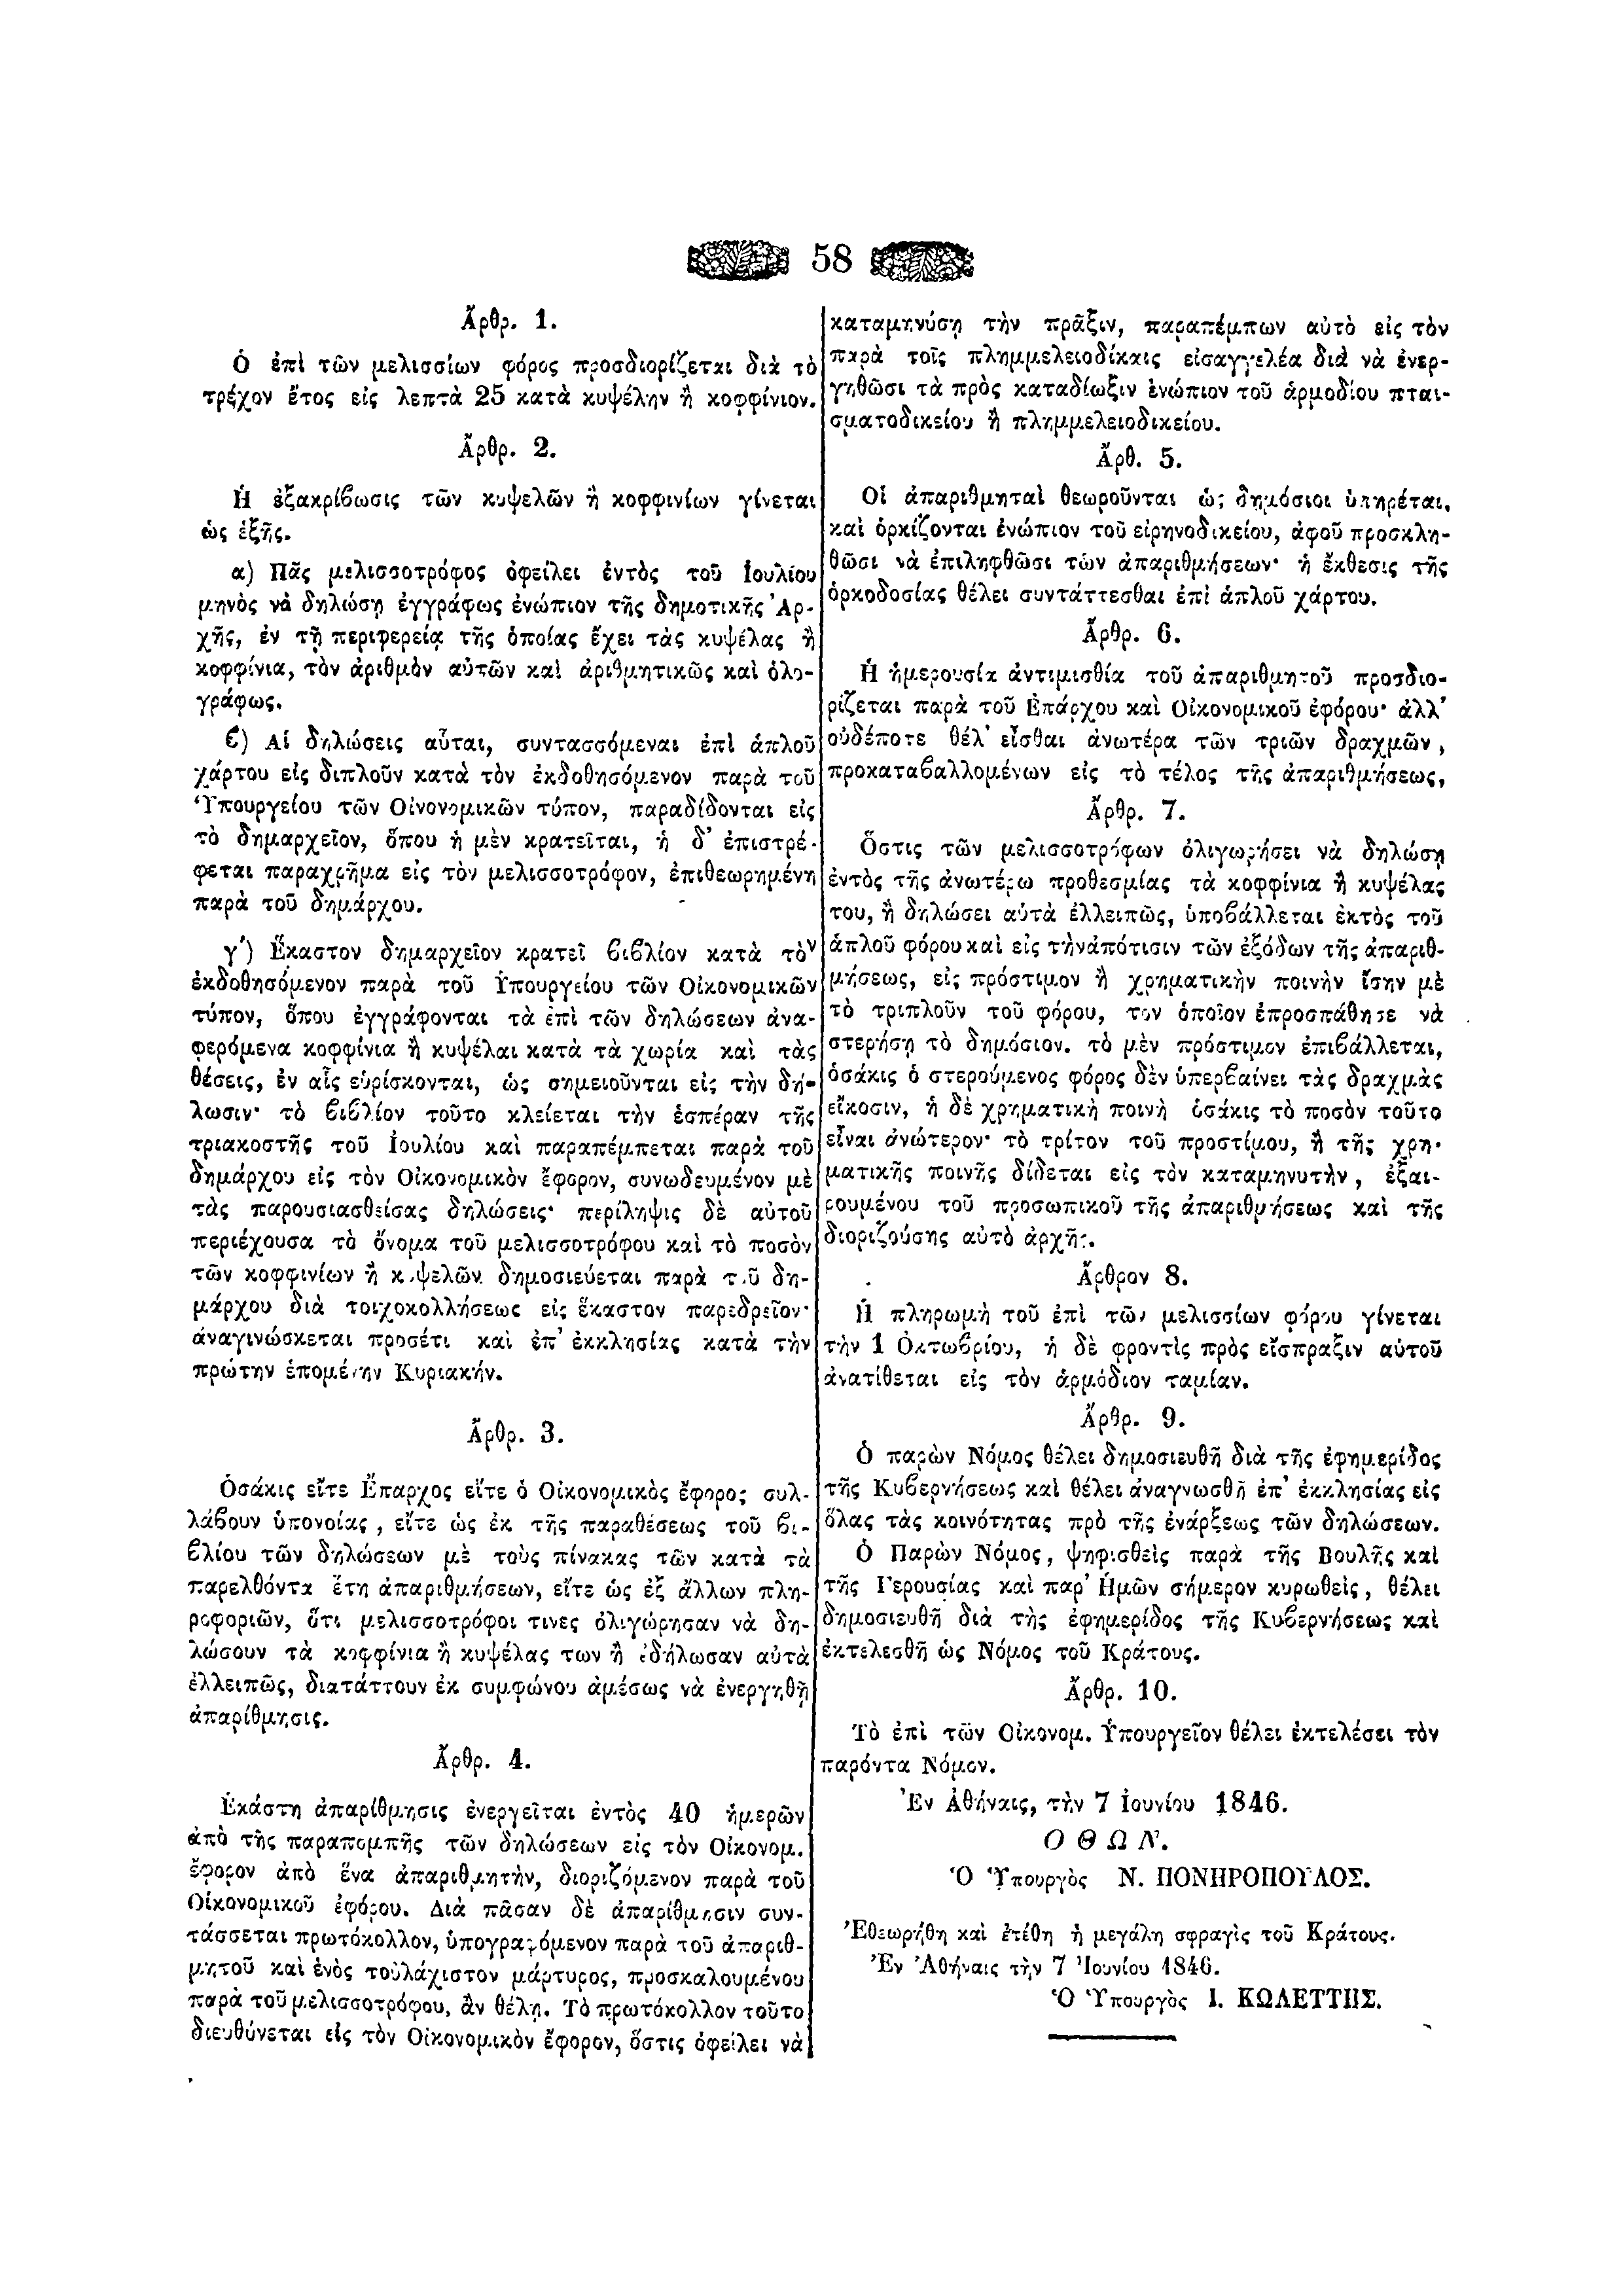 ΦΕΚ 15/10-6-1846, σ. 58.